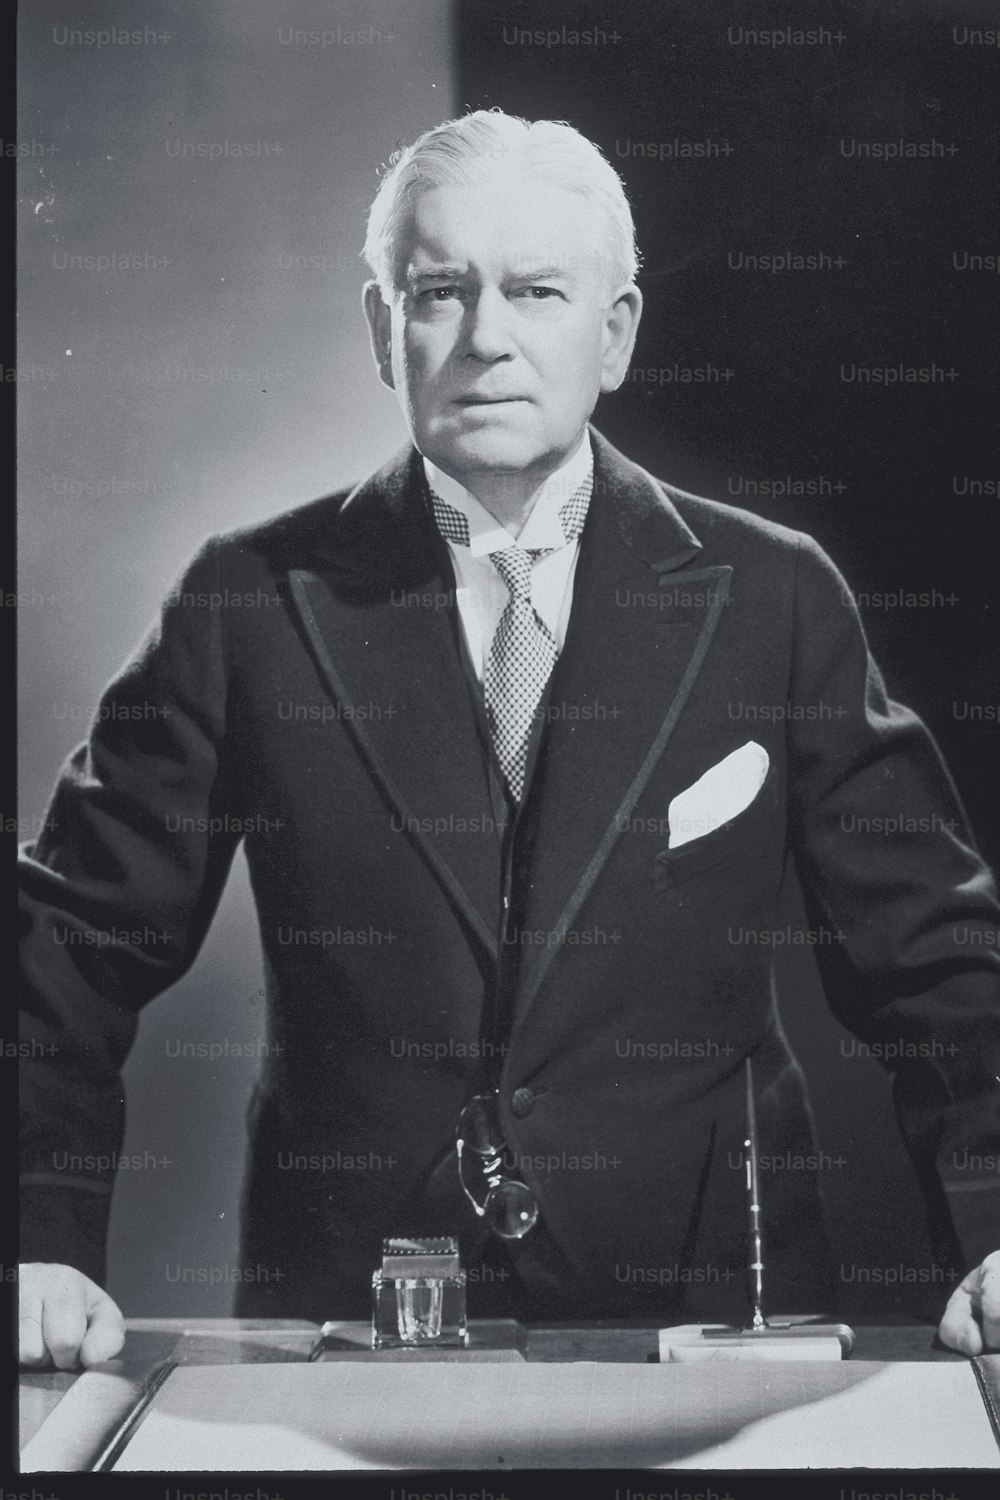 スーツを�着た男性の白黒写真